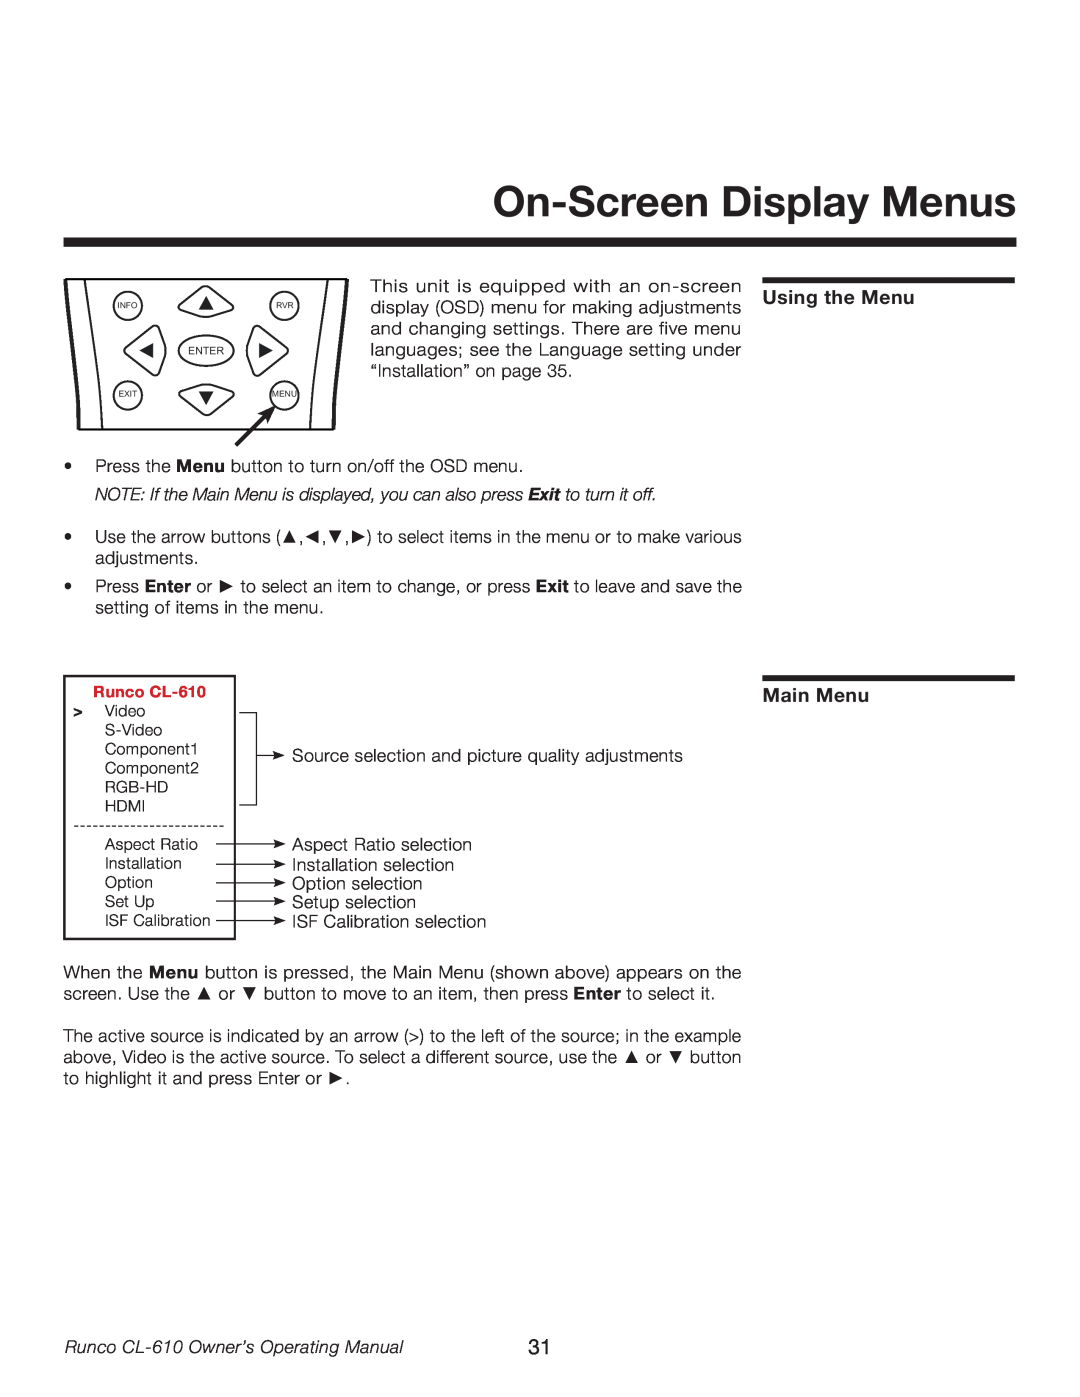 Runco CL-610LT manual On-Screen Display Menus, Using the Menu, Main Menu, Runco CL-610 Owner’s Operating Manual 